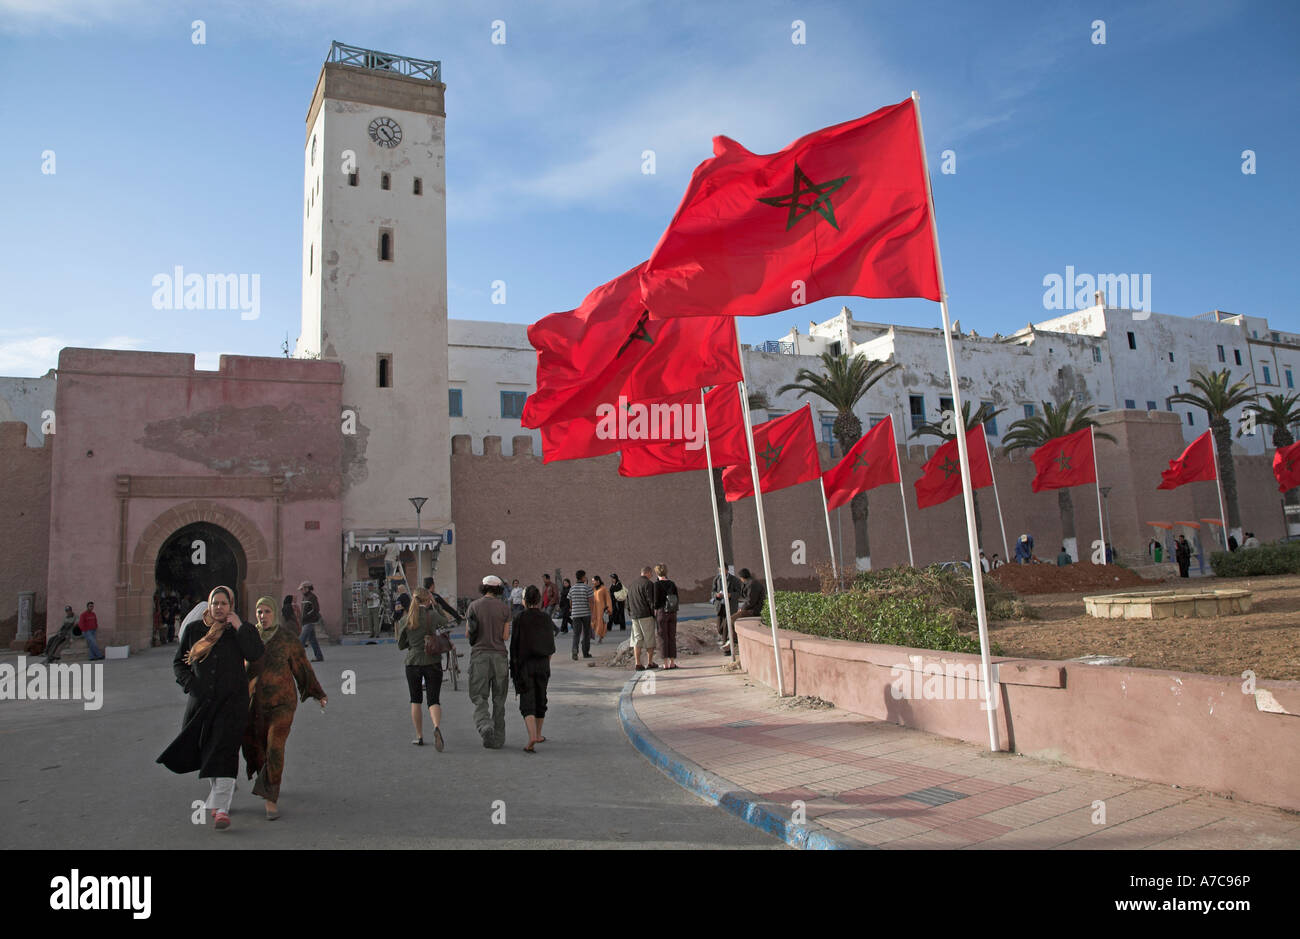 Banderas rojas celebrar la visita del rey Essaouira Marruecos norte de África Foto de stock